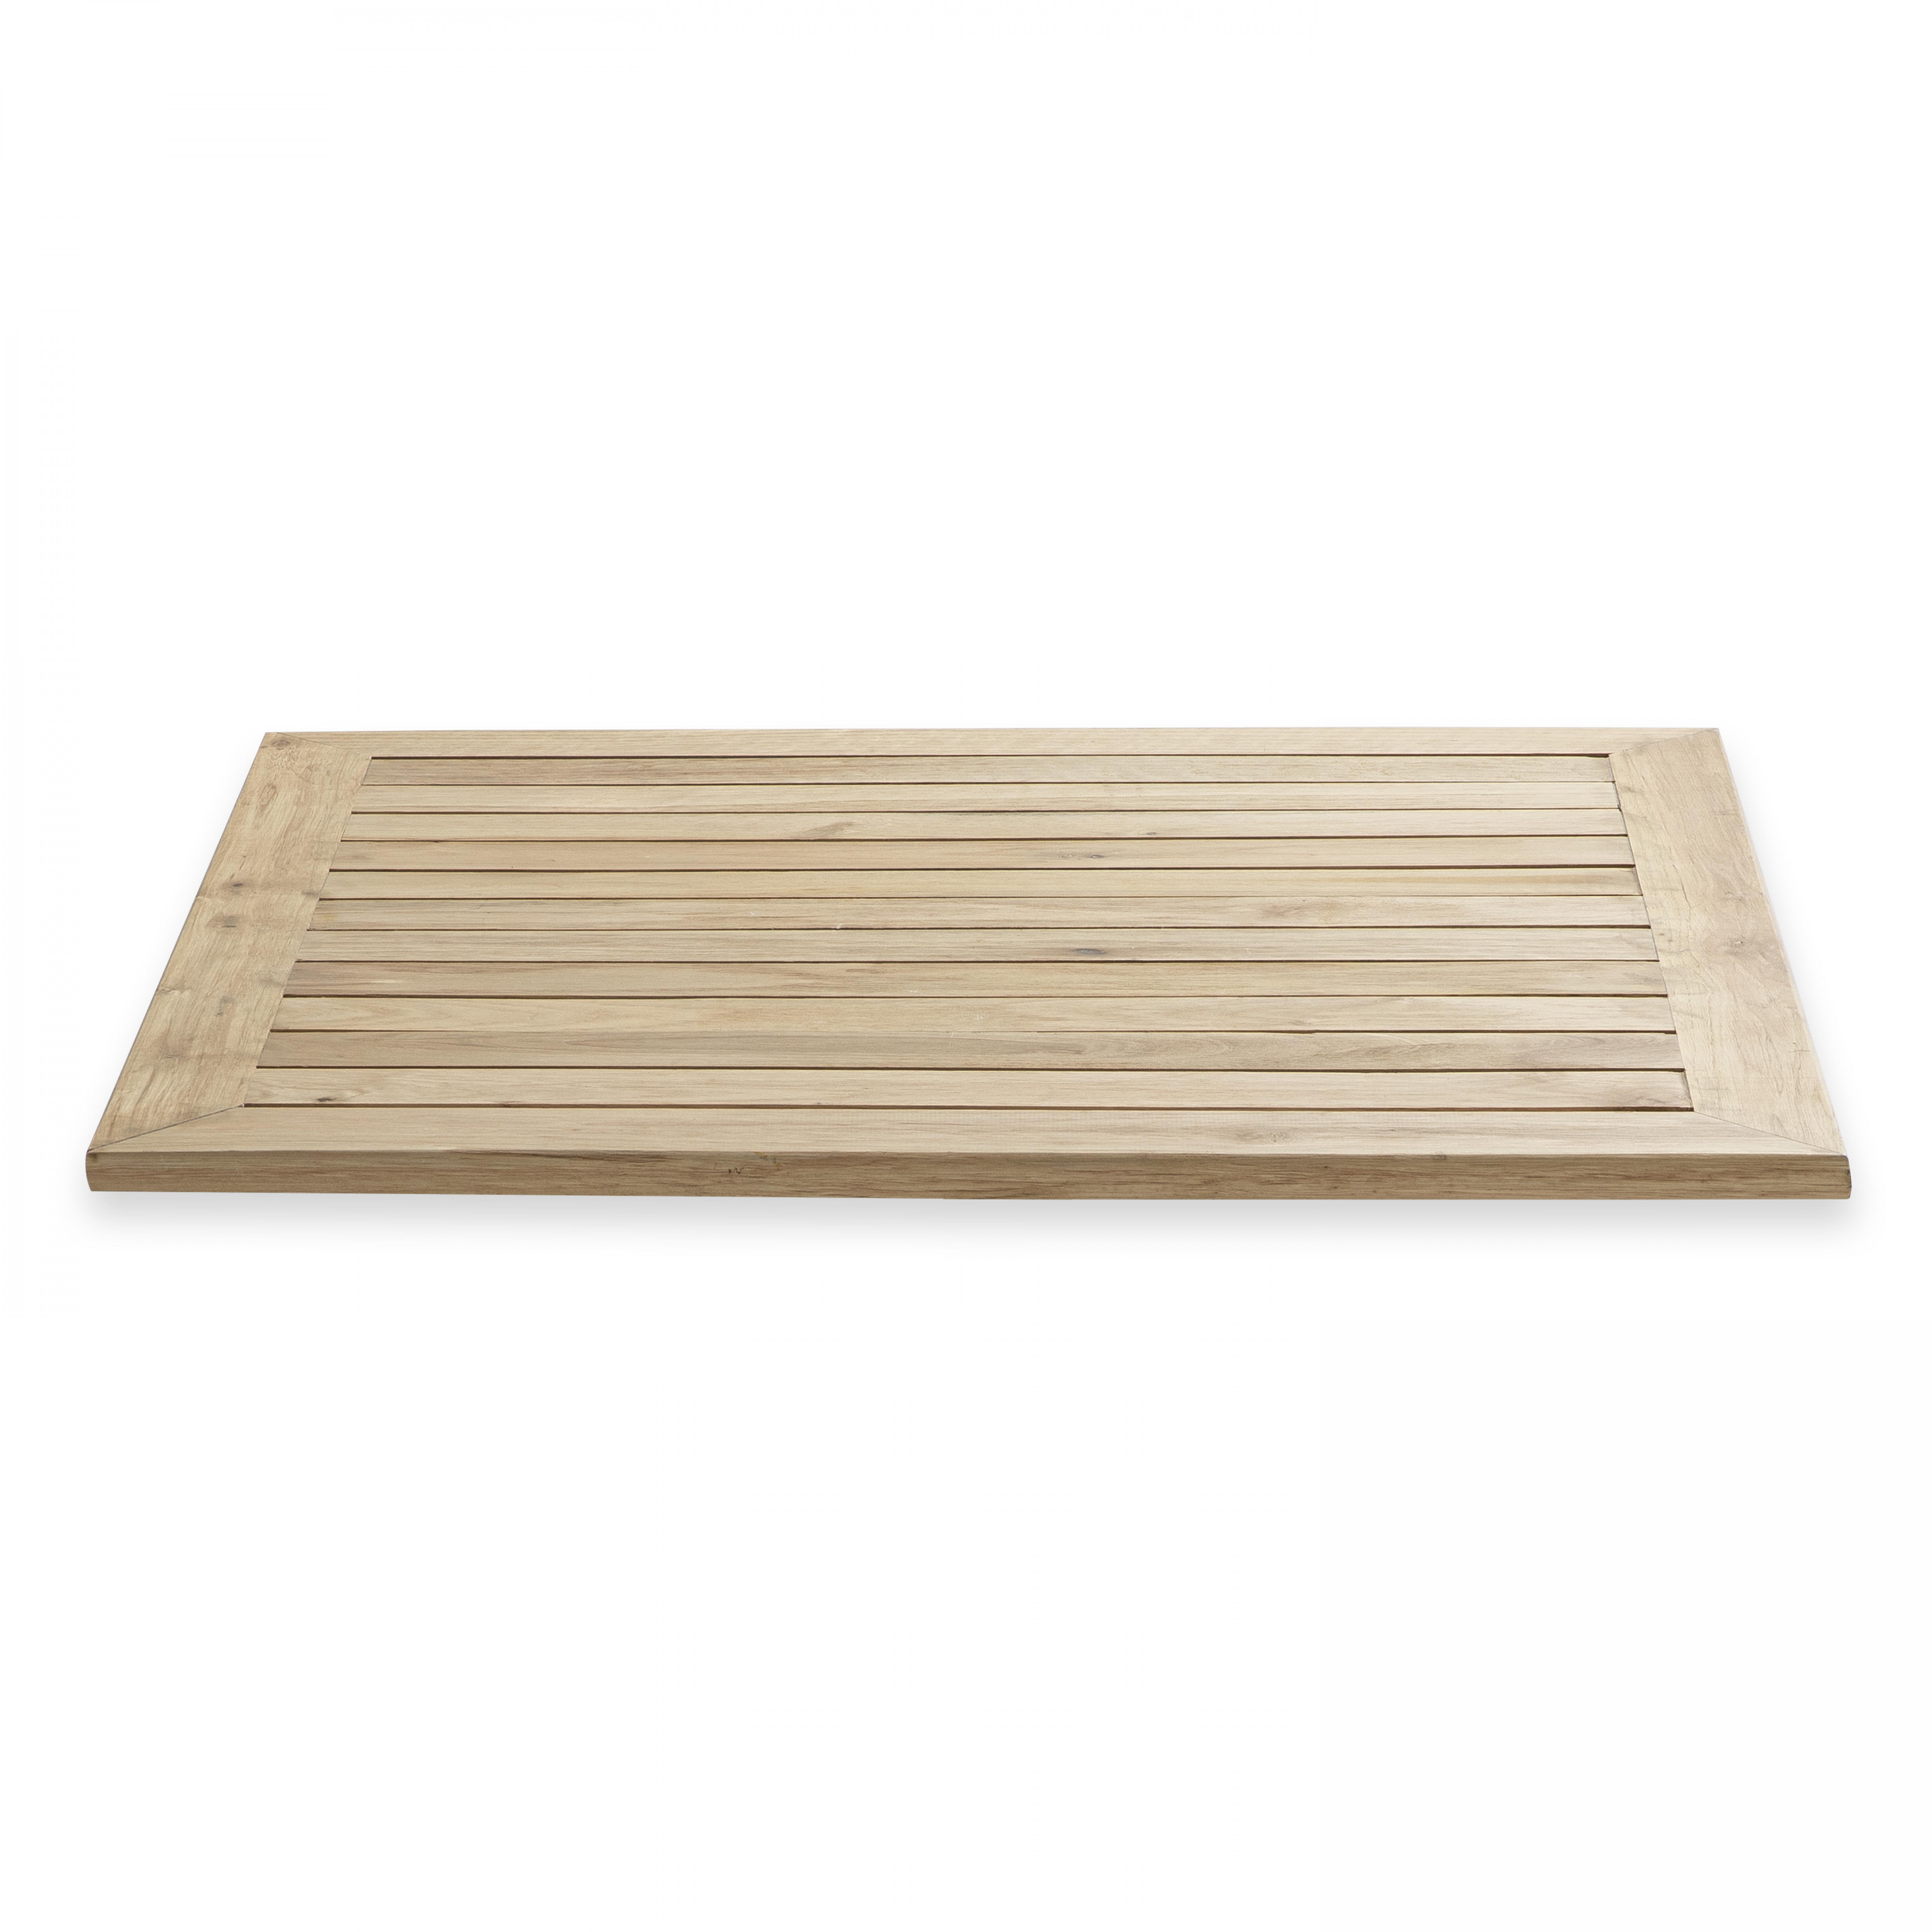 Plateau carrée en bois pour table de terrasse 70 x 70 cm